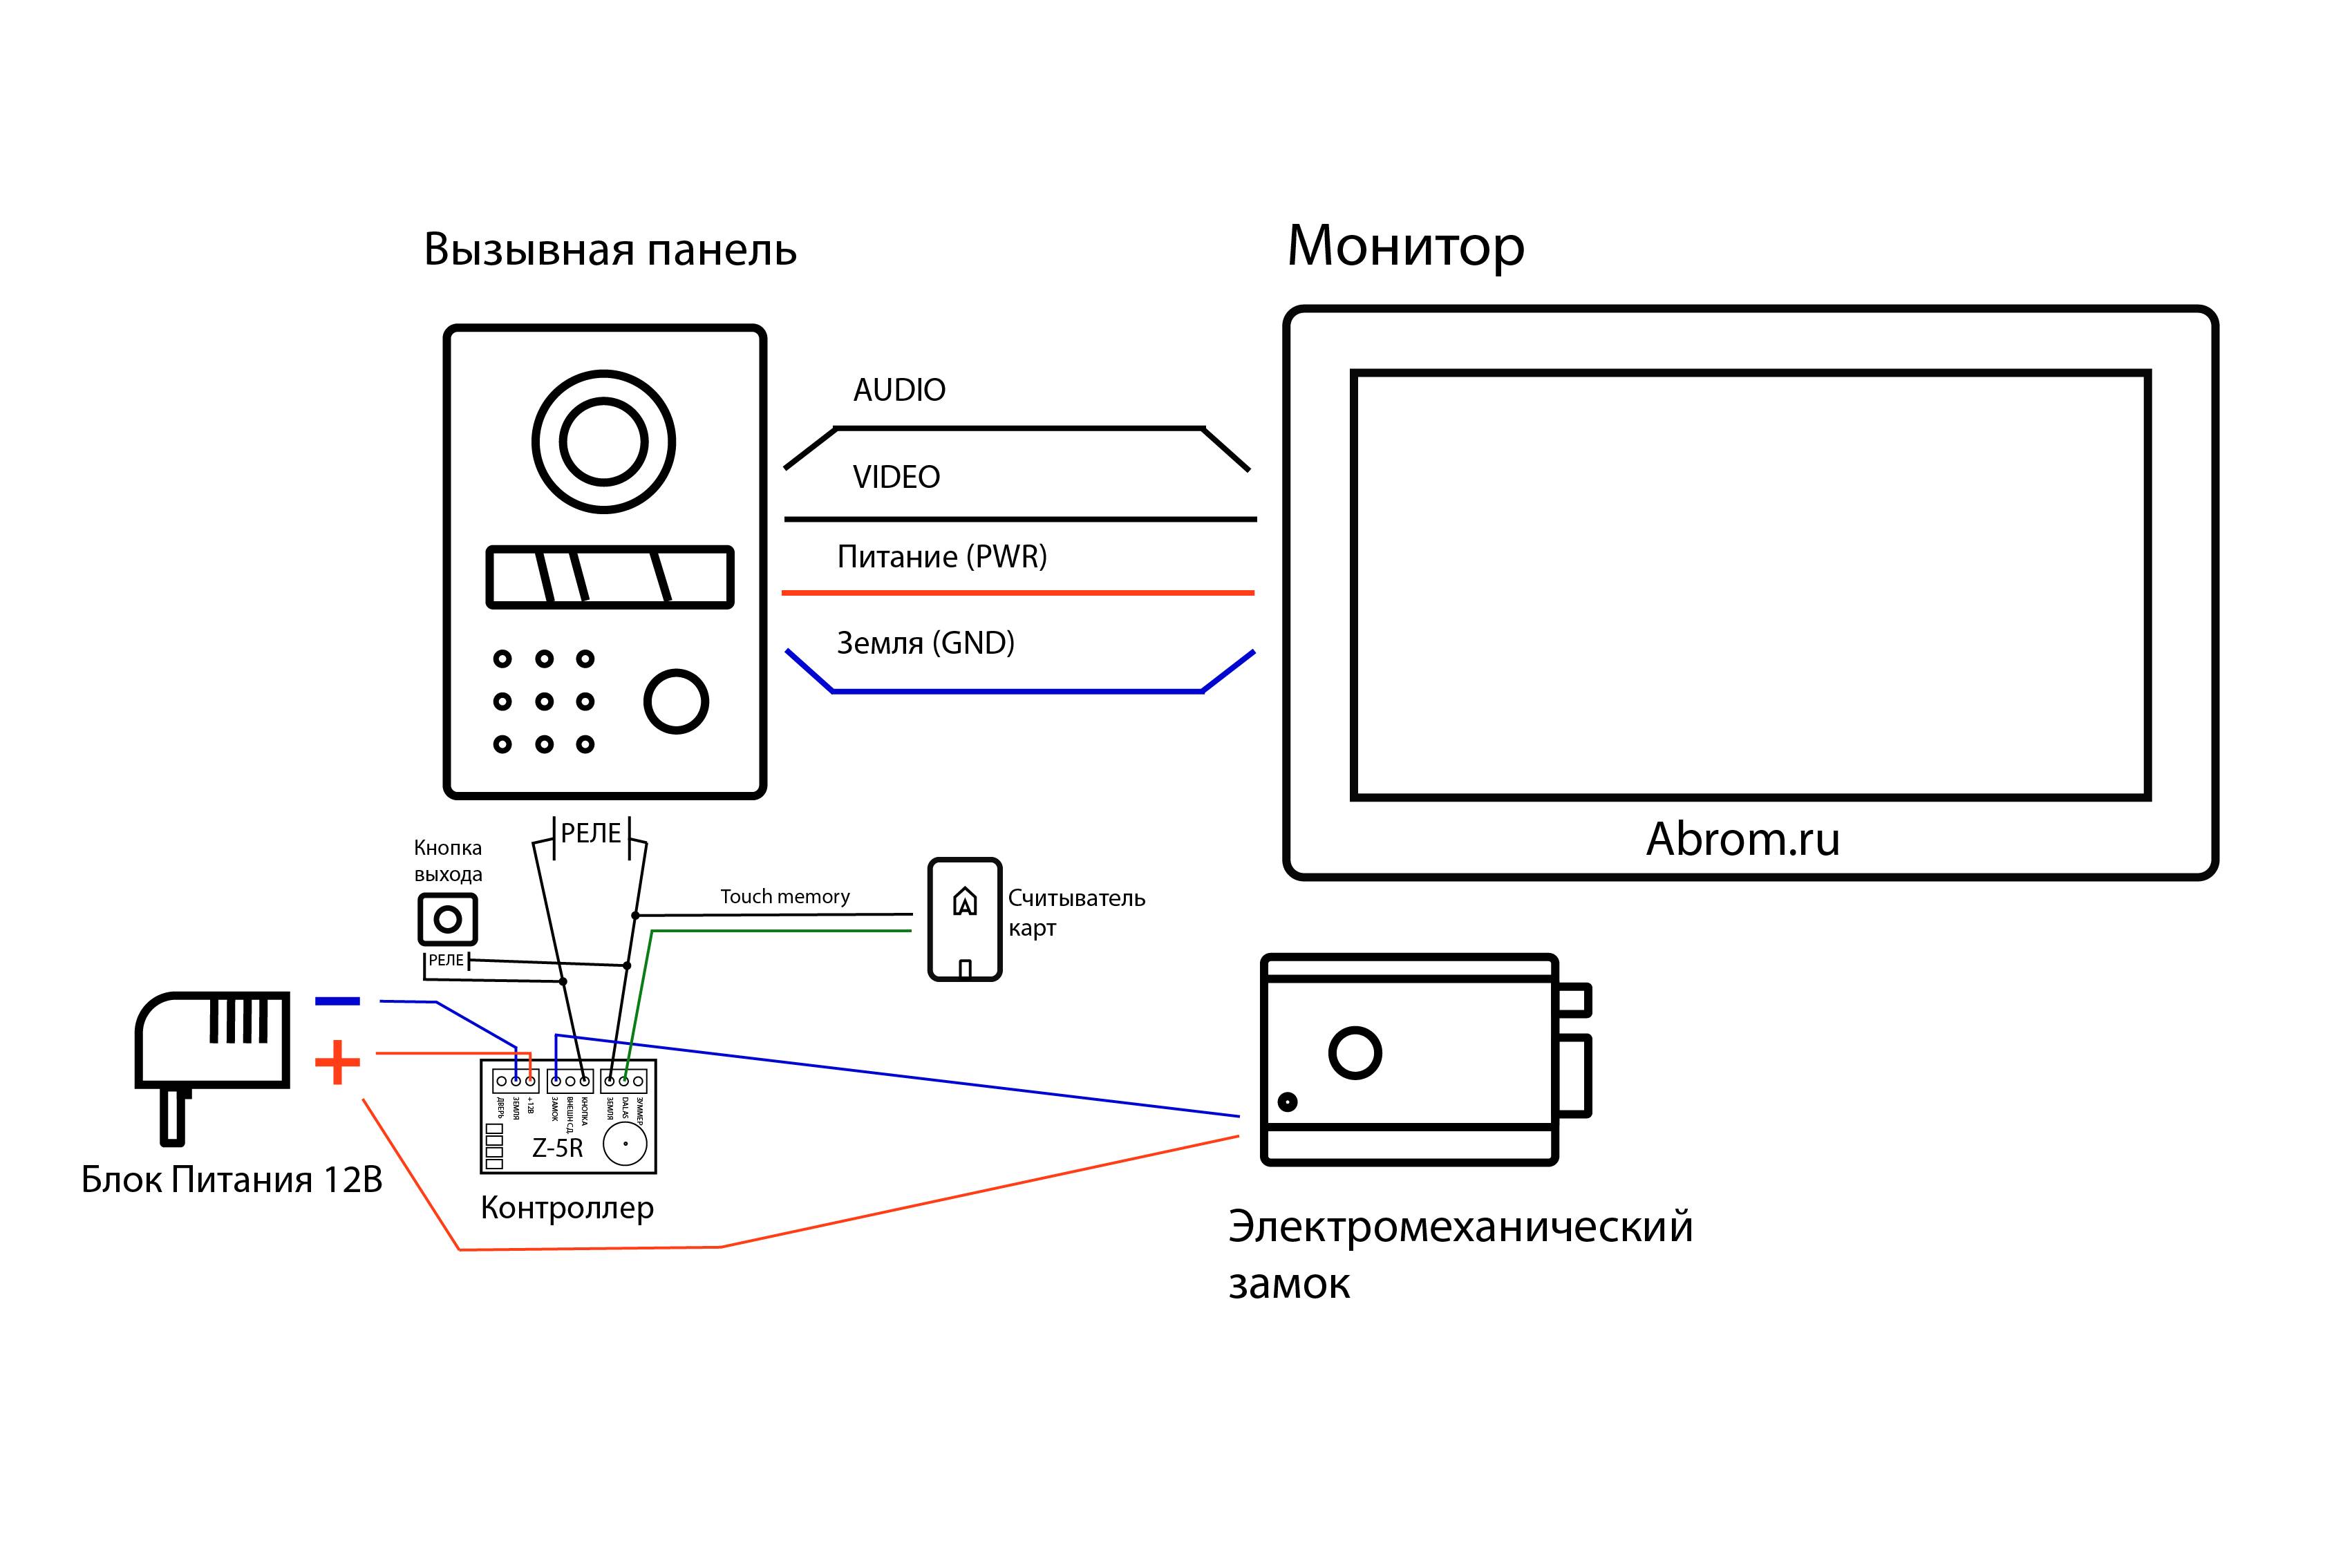 Как установить видеодомофон в частном доме - 7 ошибок. схема подключения замка, вызывной панели и буз.